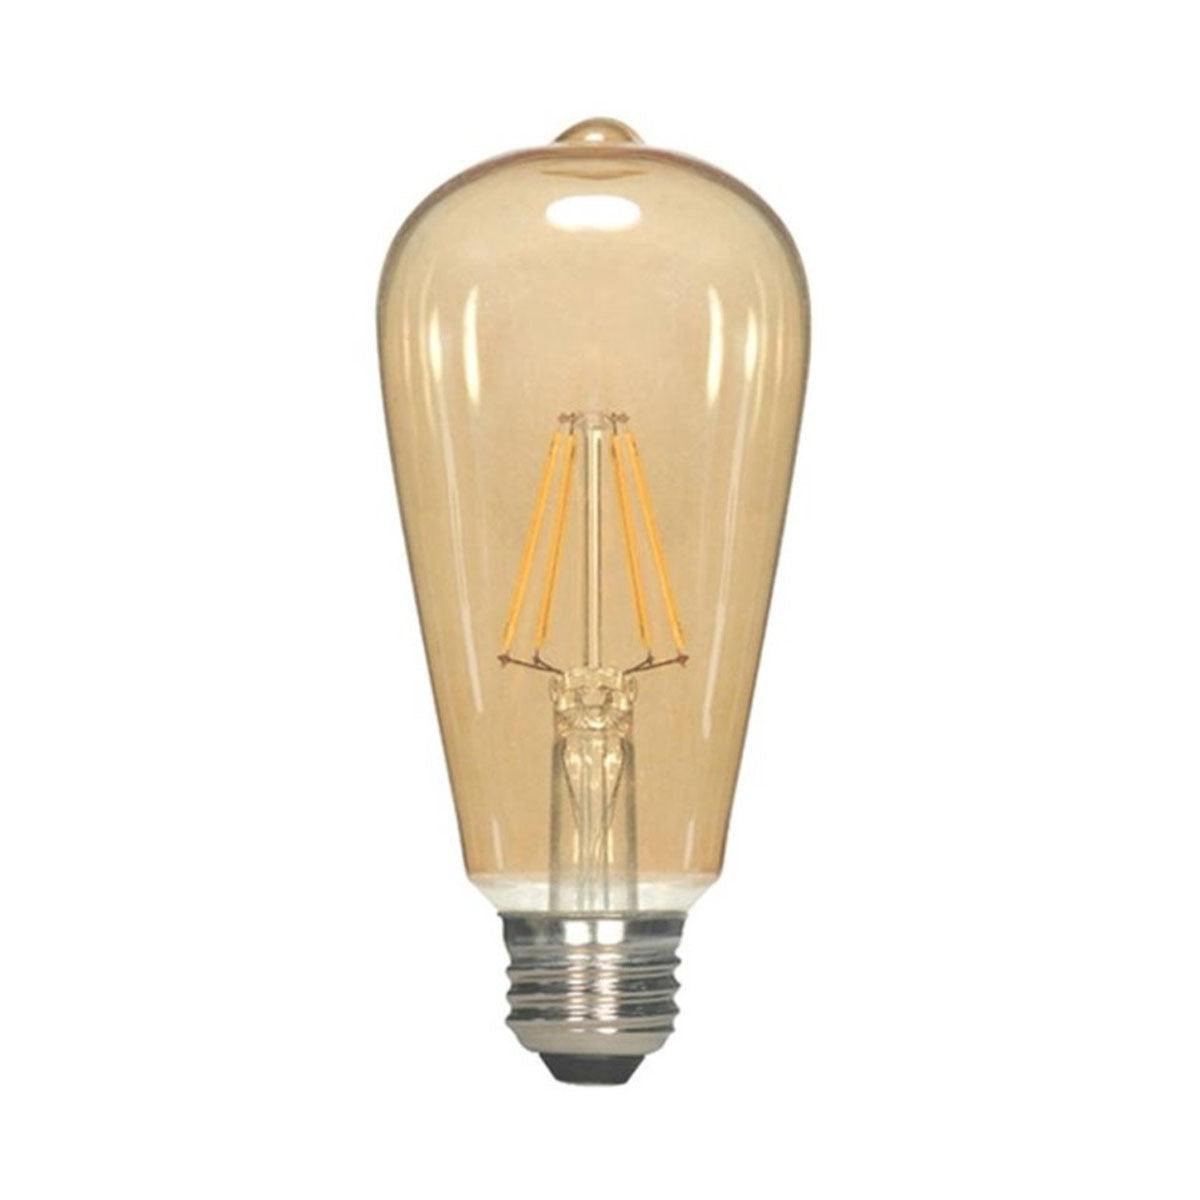 LED ST19 Straight Tapered Bulb, 3 Watt, 220 Lumens, 2000K, E26 Medium Base, Amber Finish - Bees Lighting